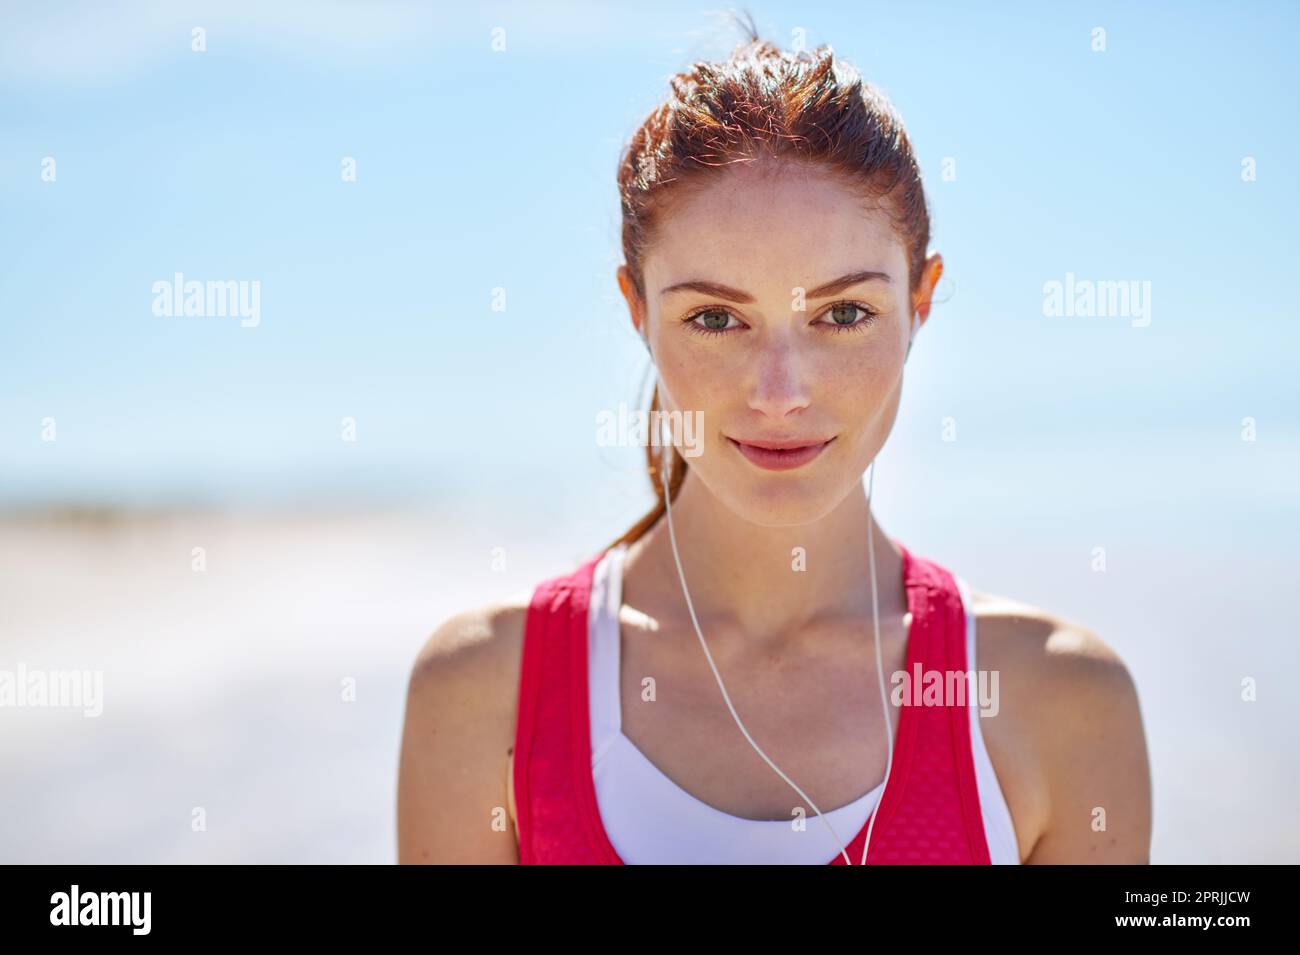 La spiaggia è il mio posto preferito per allenarsi, una giovane donna sportiva sulla spiaggia. Foto Stock